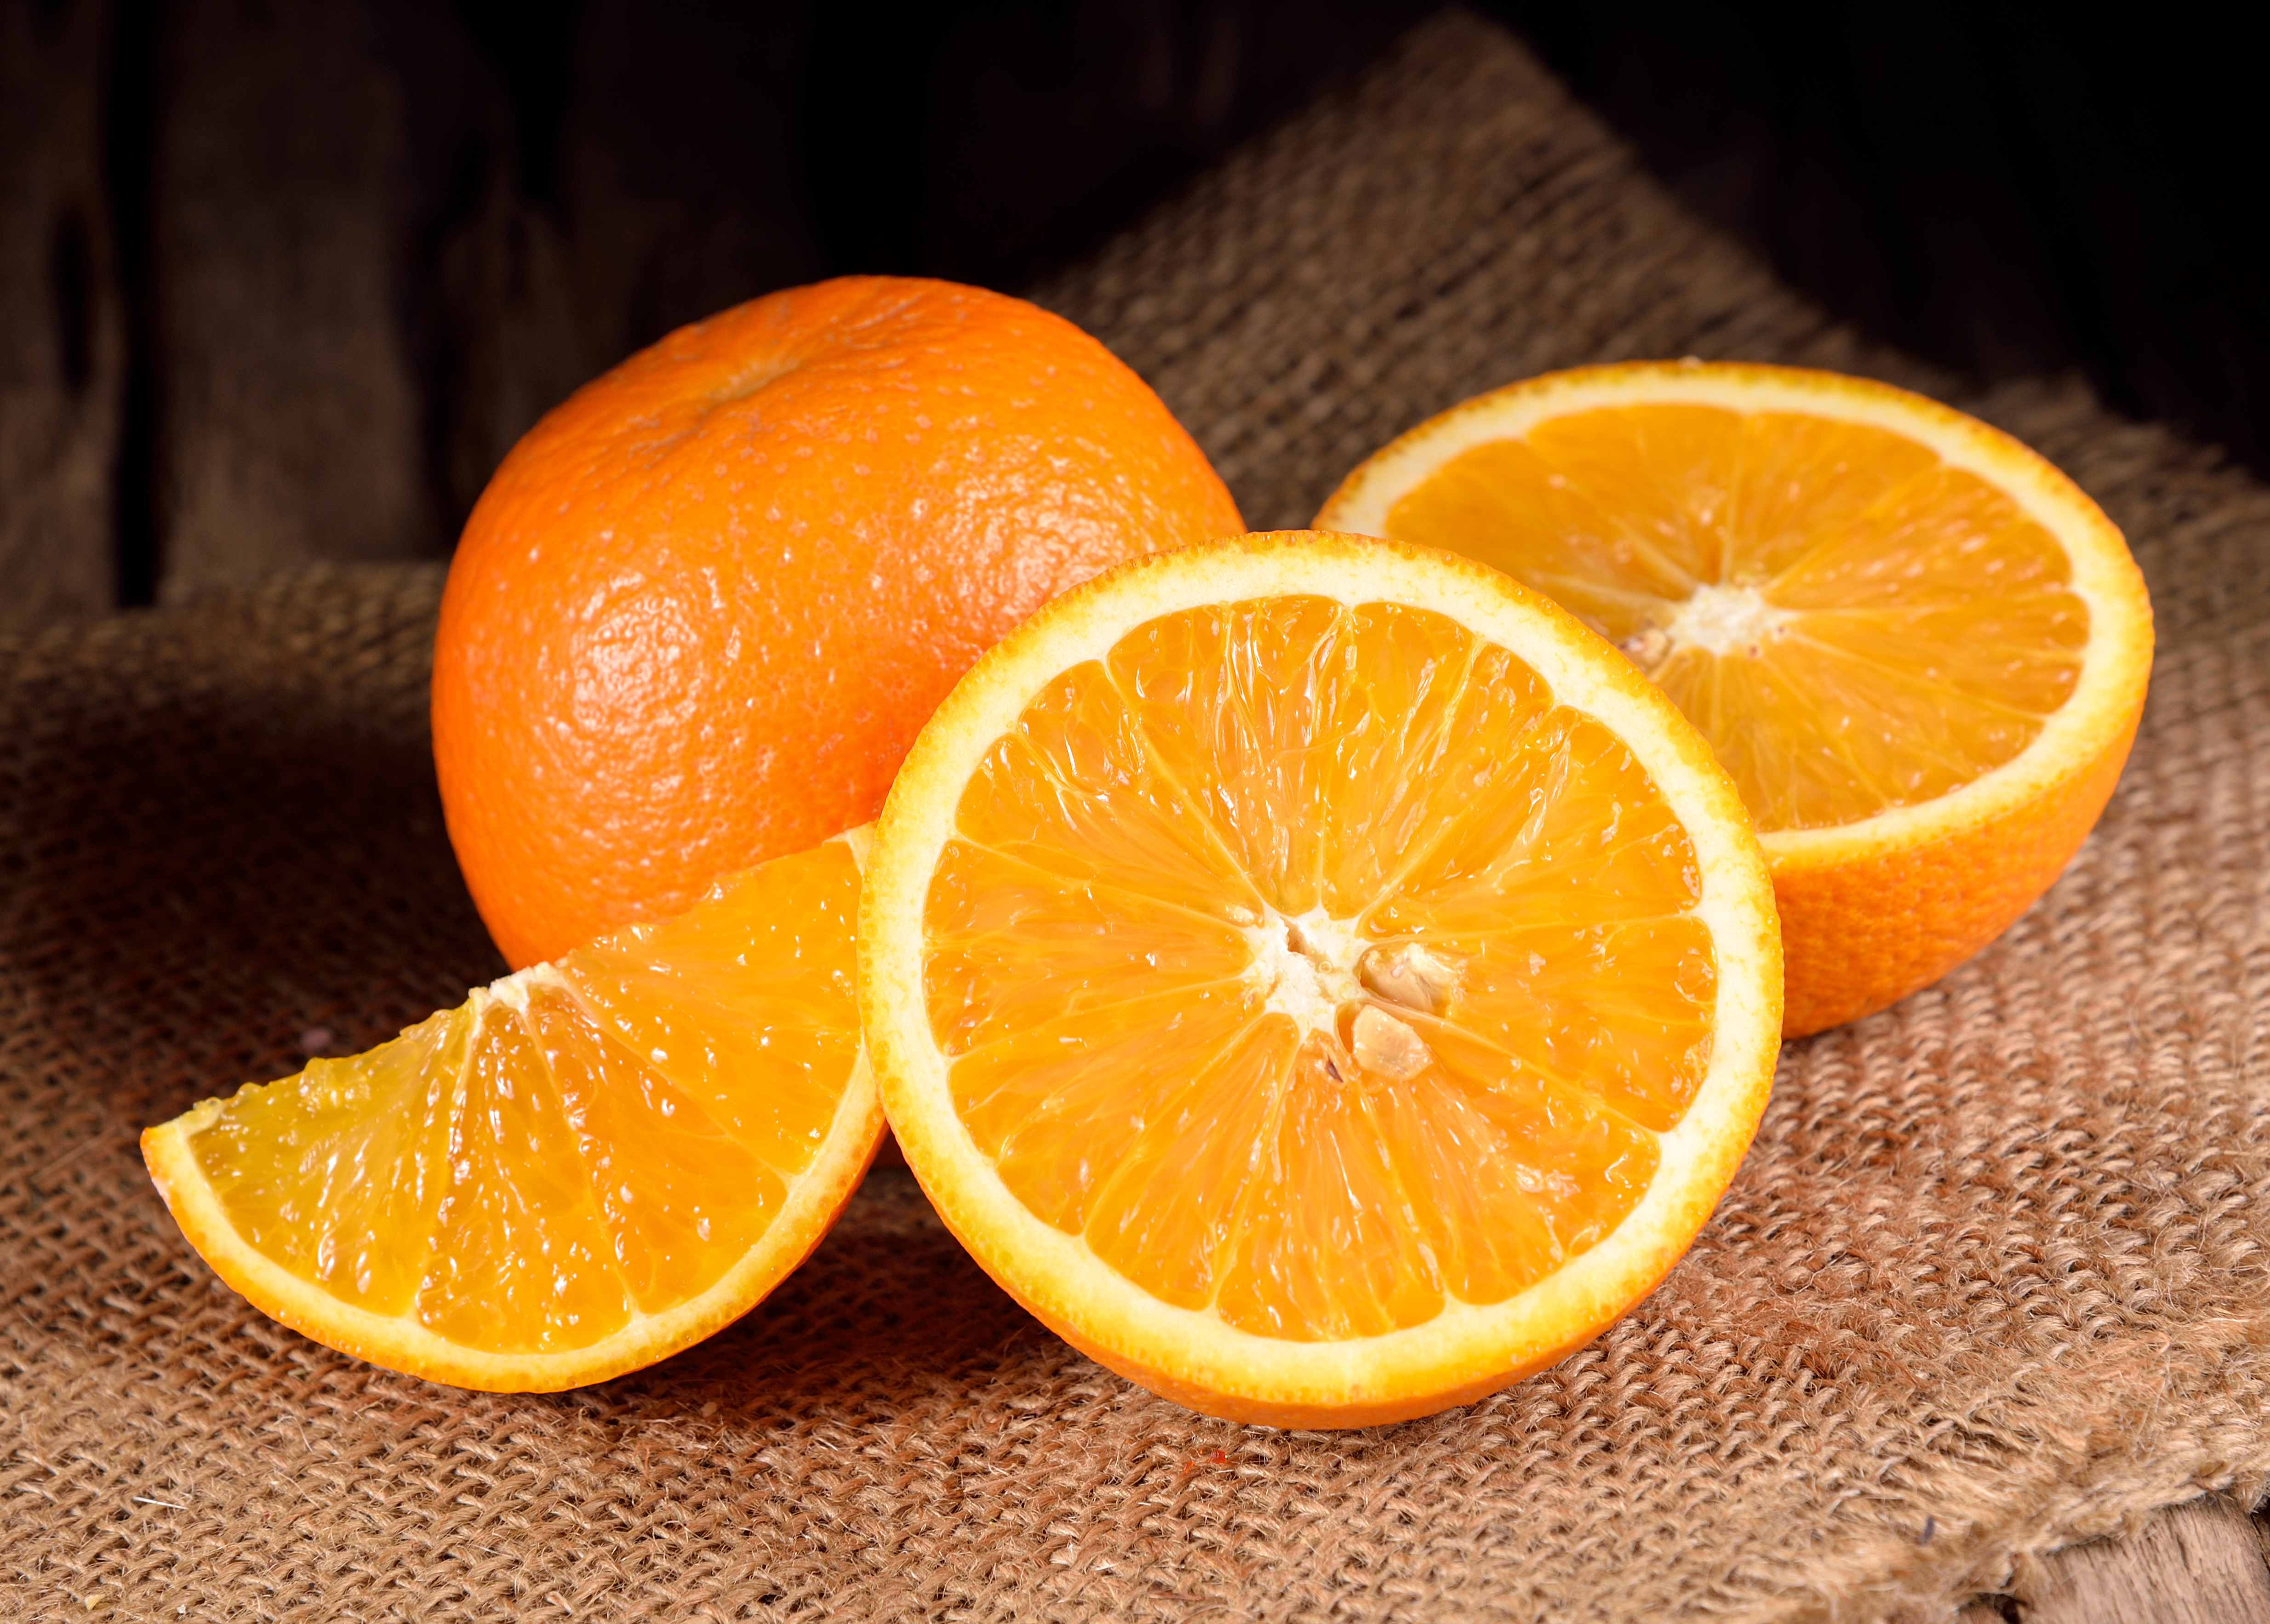 washington navel orange - navel oranges - washington navel oranges - washington oranges - oranges - fruit - history - organic fruit